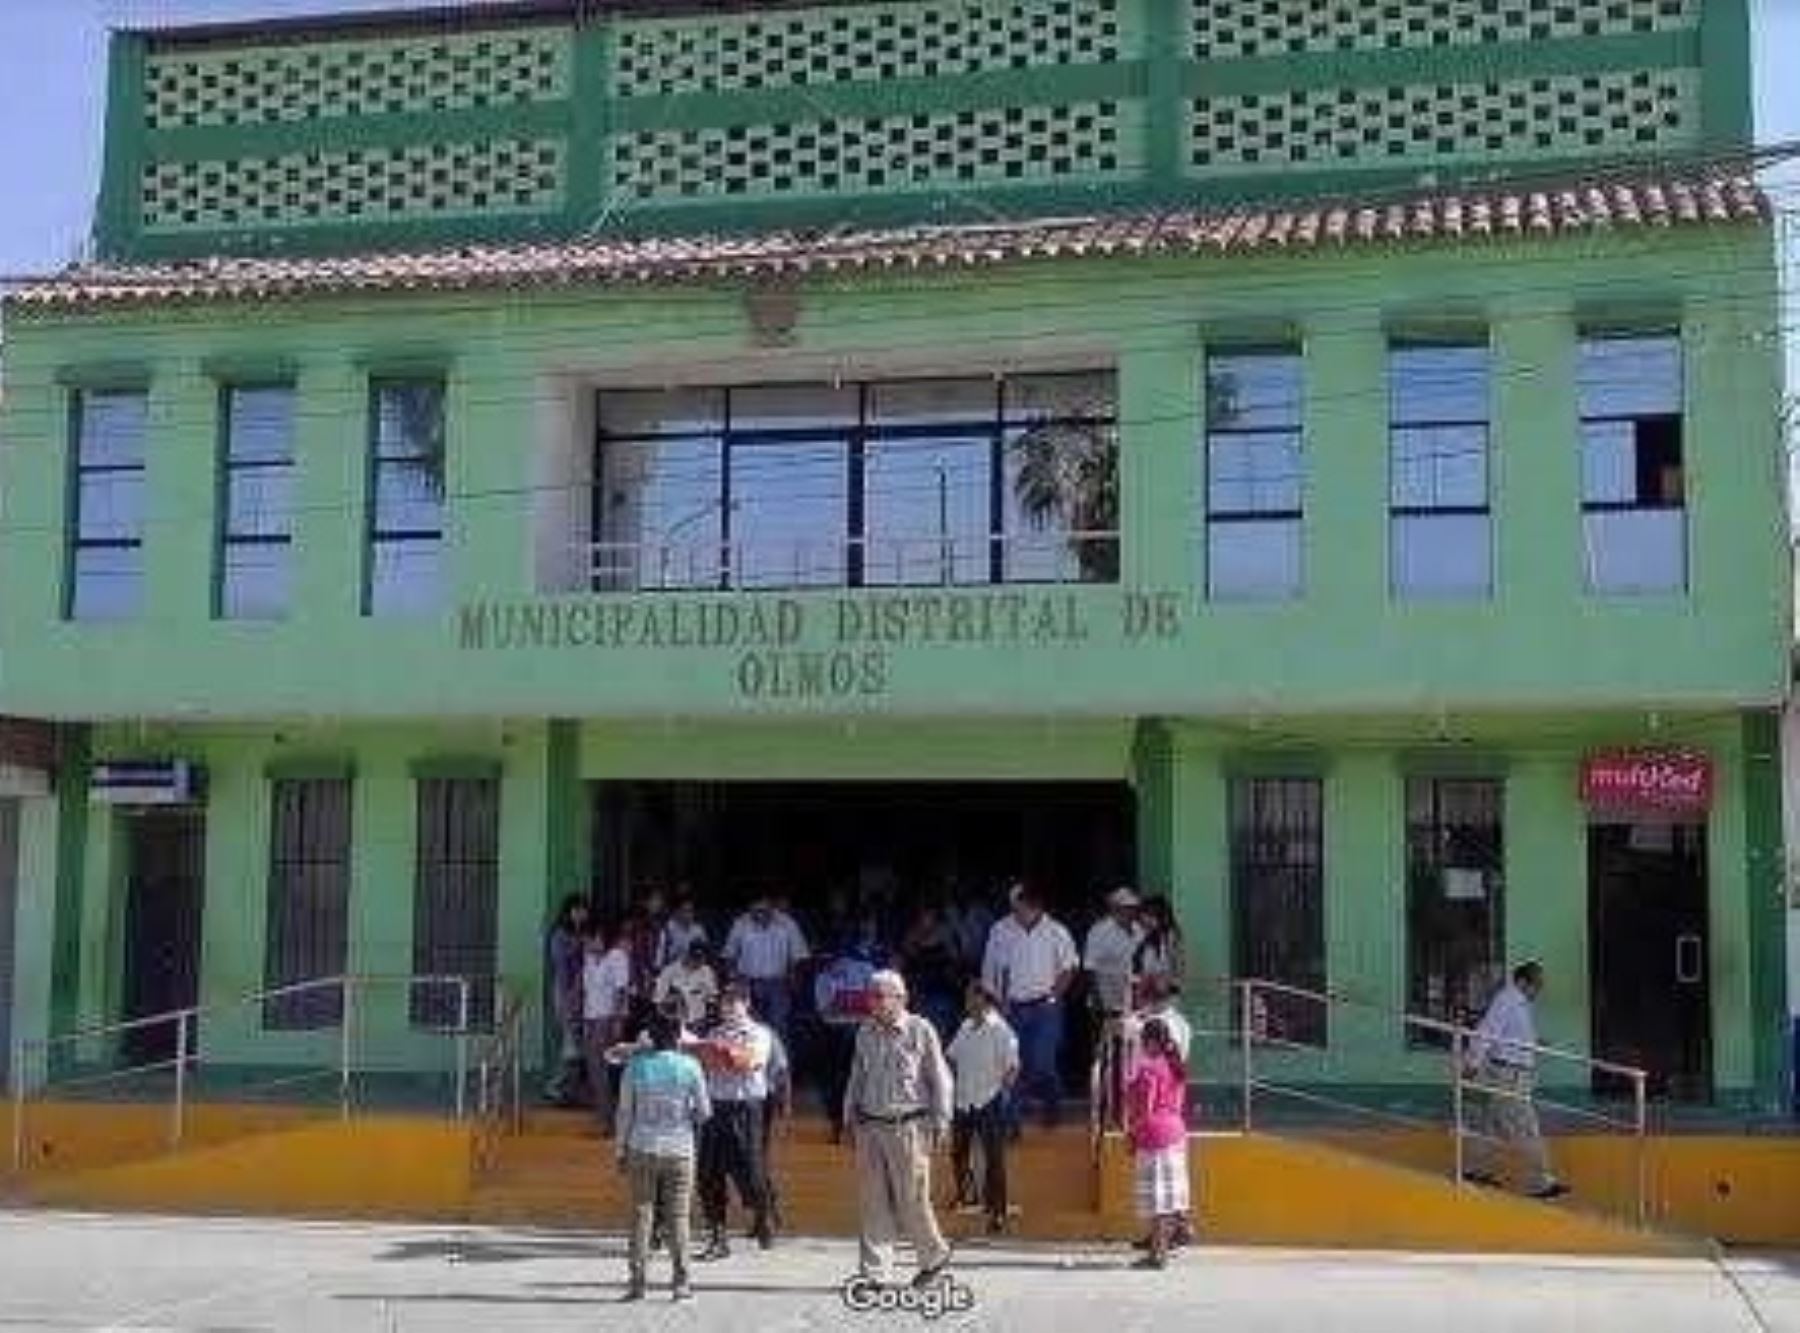 Fiscalía Especializada en Delitos de Corrupción de Funcionarios de Lambayeque detuvo a cinco funcionarios de la municipalidad distrital de Olmos.